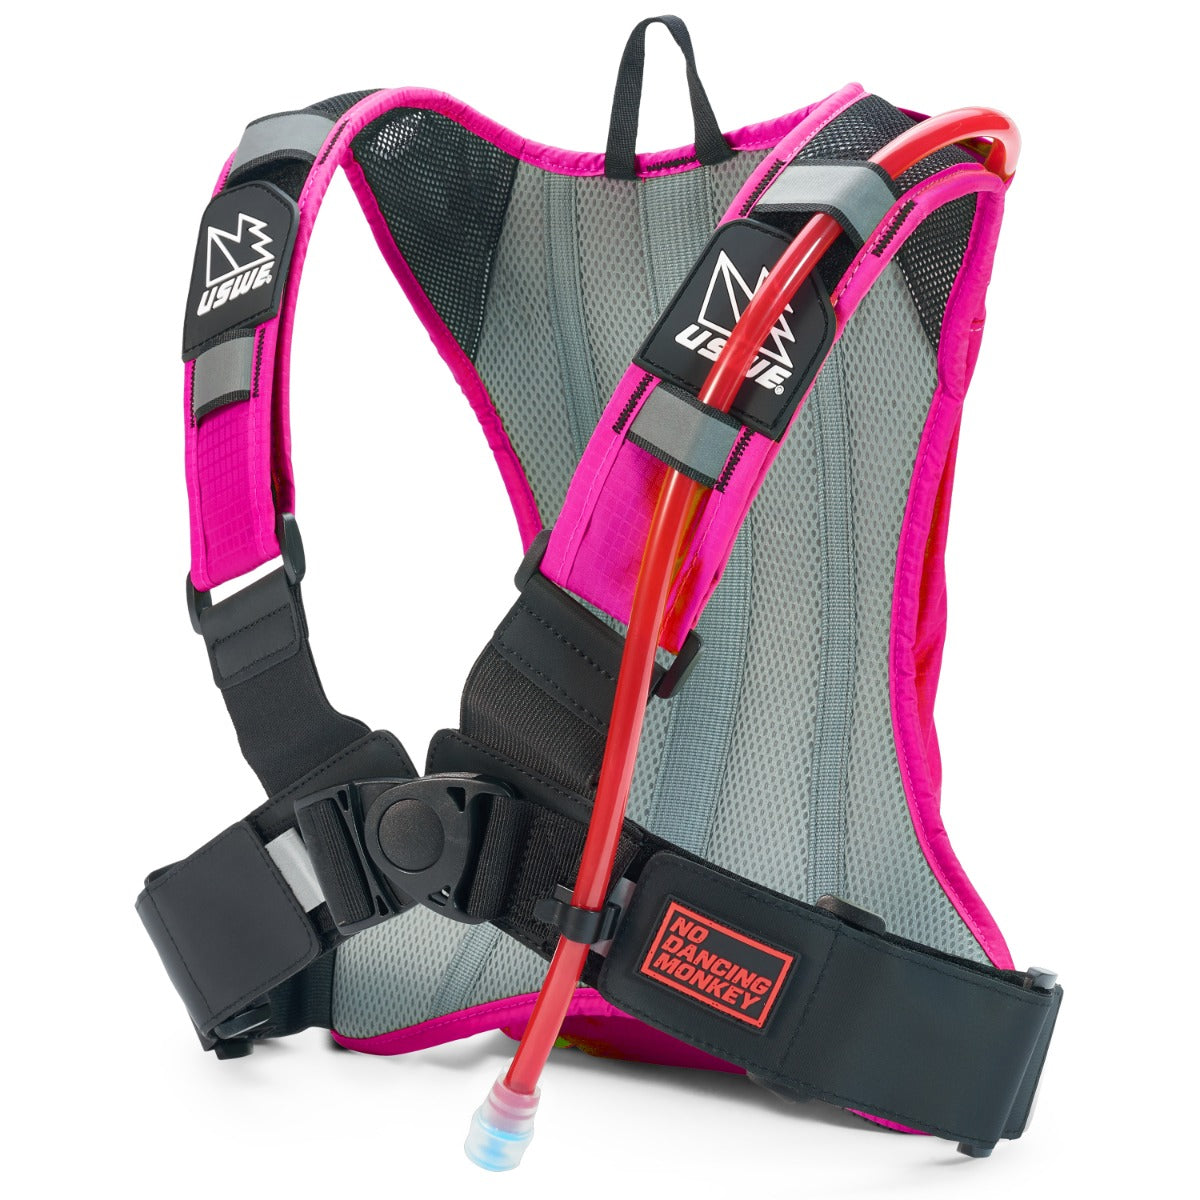 USWE Outlander 2 Hydration Backpack Pink – With 1.5 Litre Bladder